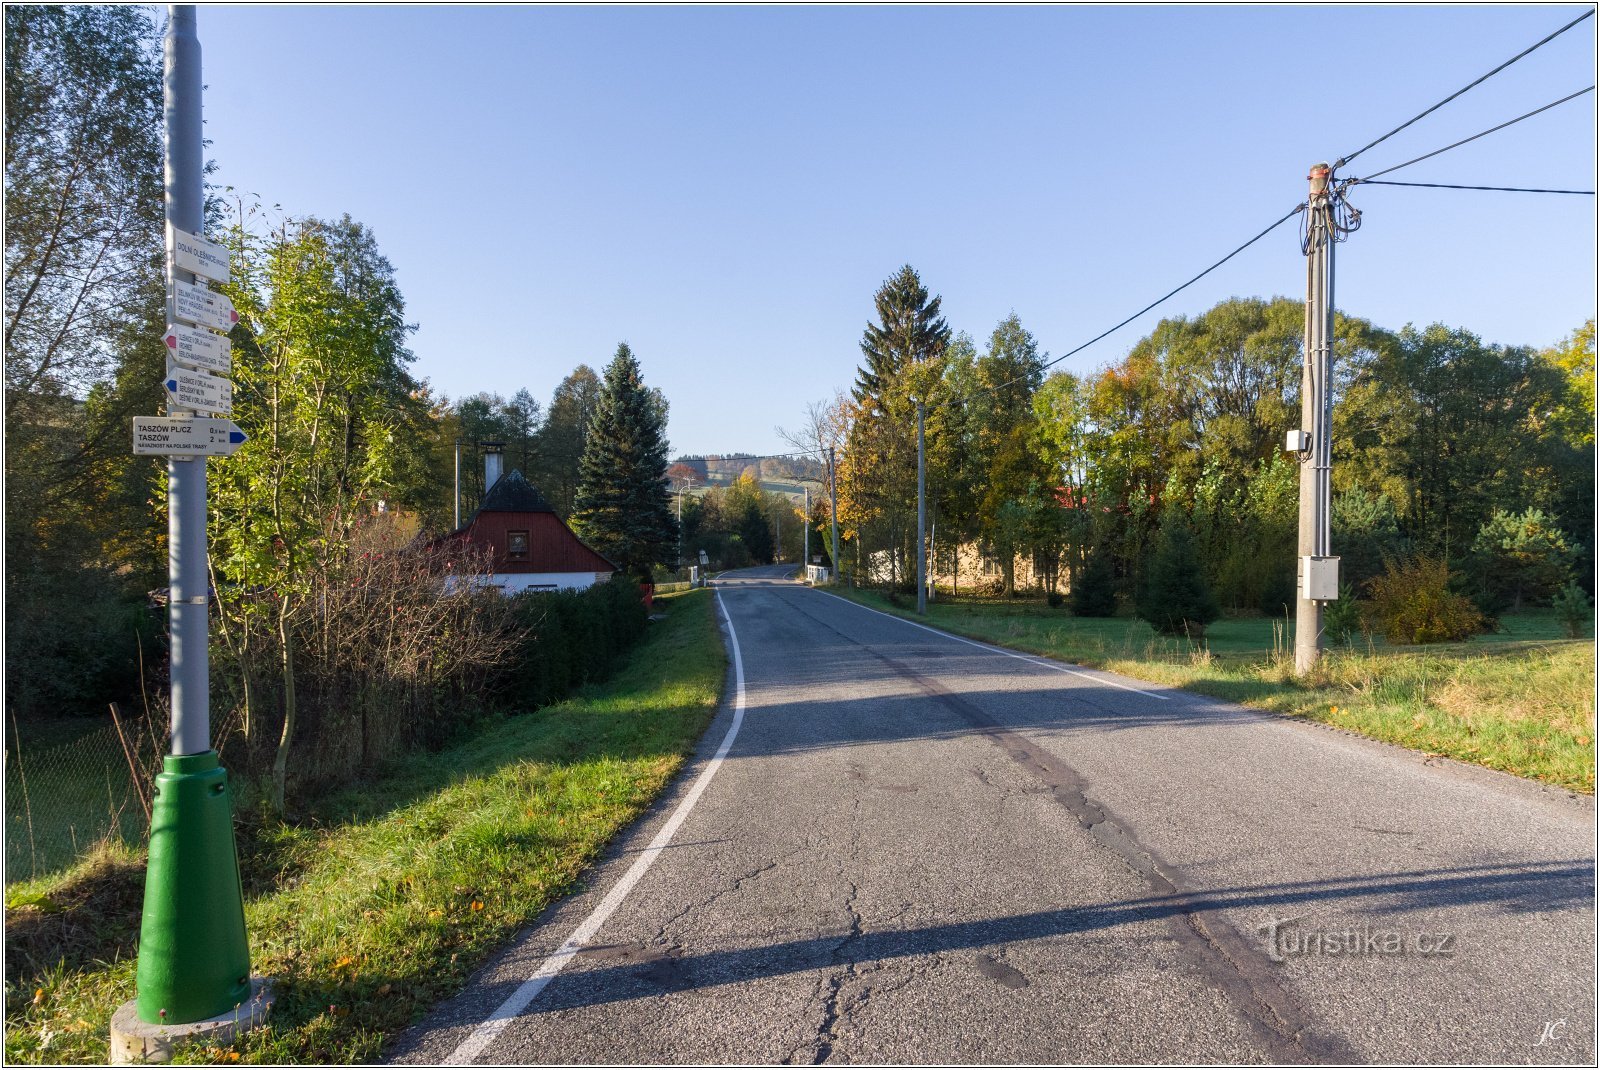 3-Dolní Olešnice, carrefour, route vers Dobruška